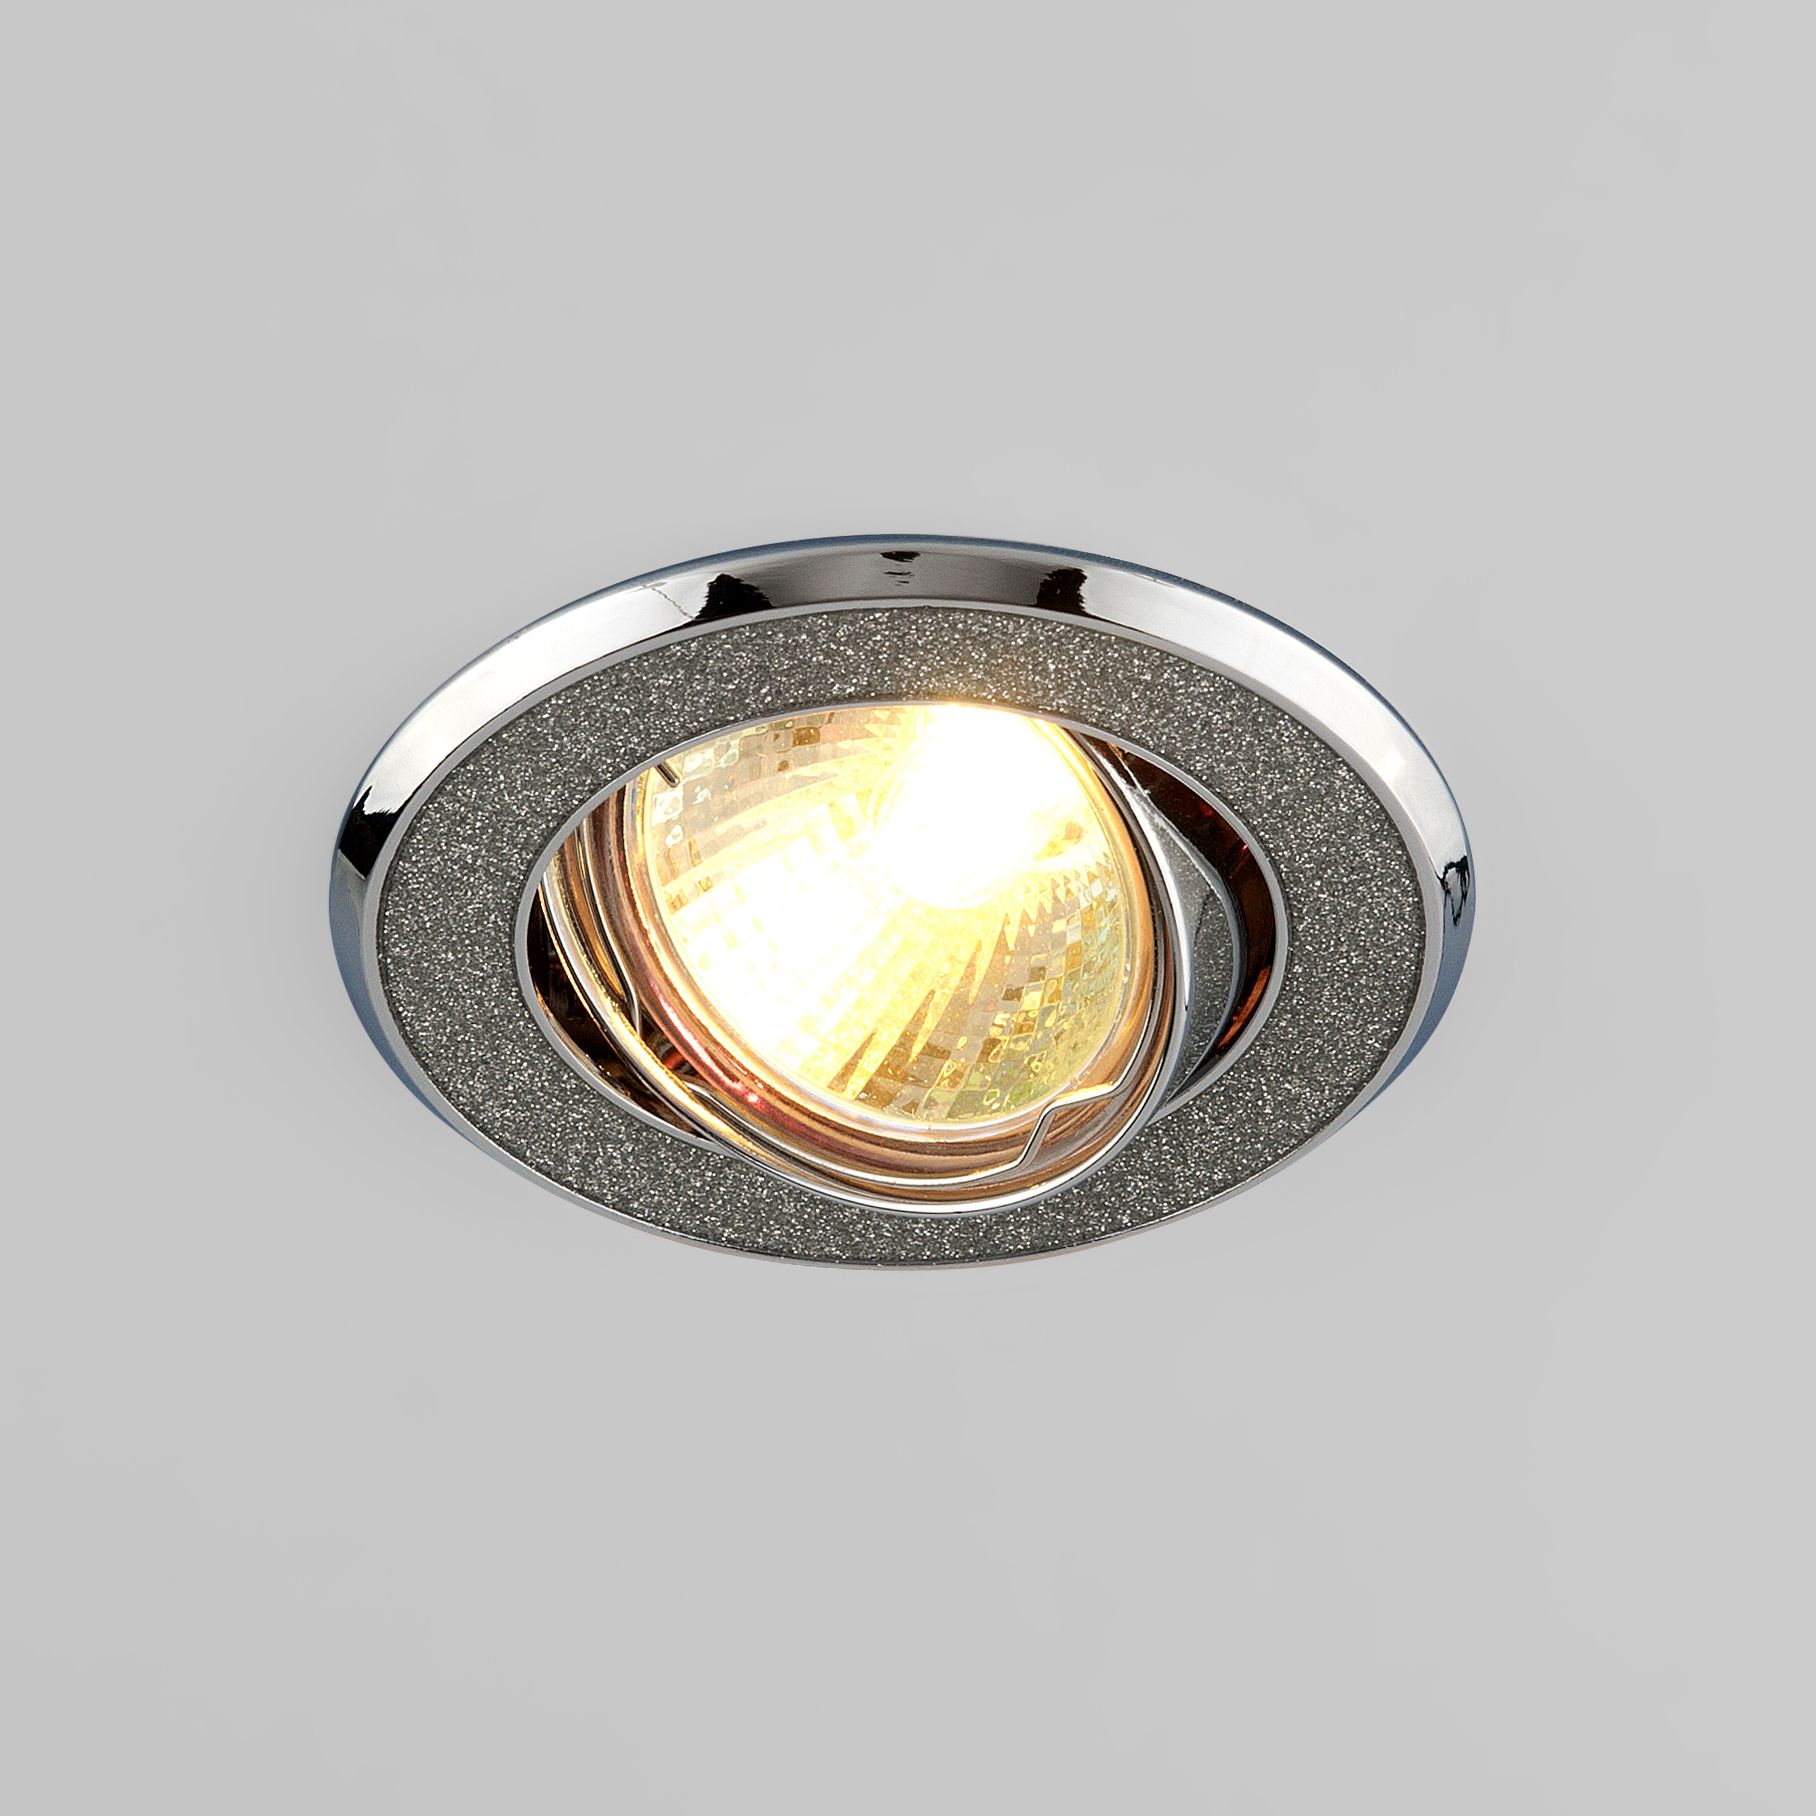 Встраиваемый точечный светильник серебряный блеск/хром 611 MR16 SL серебряный блеск/хром 611 MR16 SL